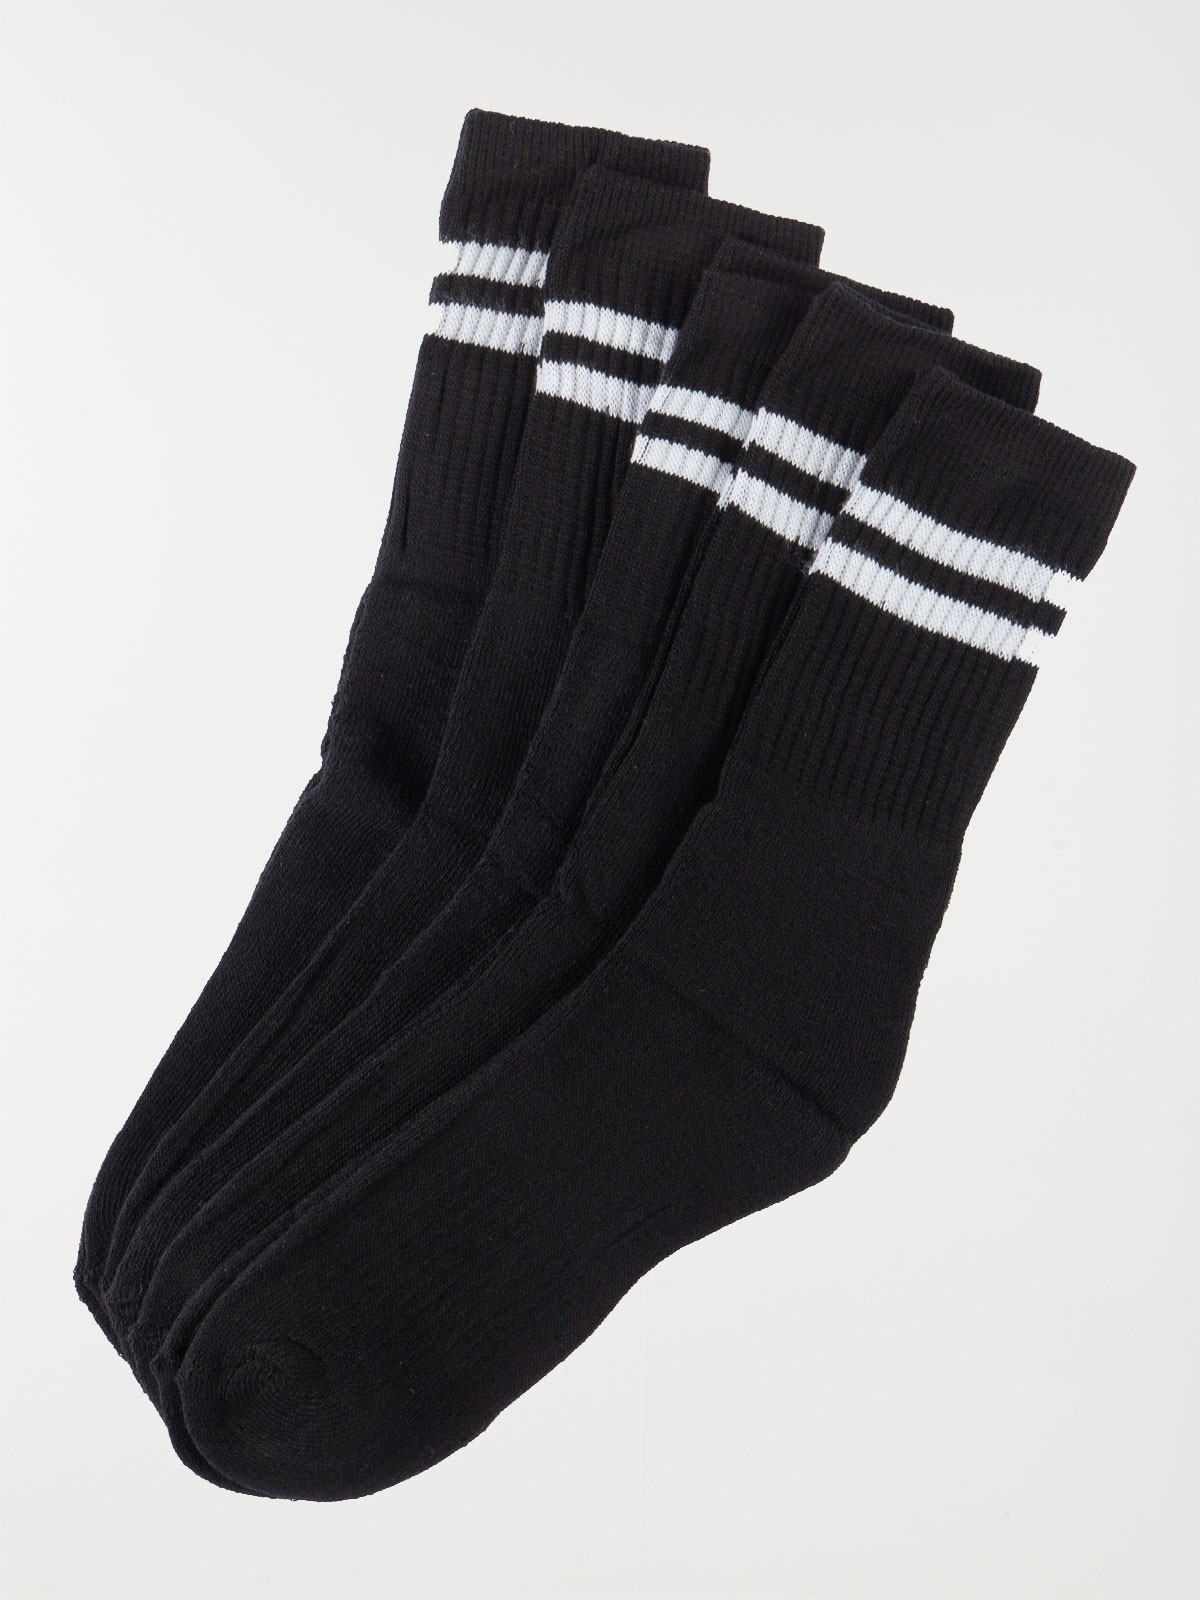 Achat de chaussettes noires homme en polyester-coton pas cher.